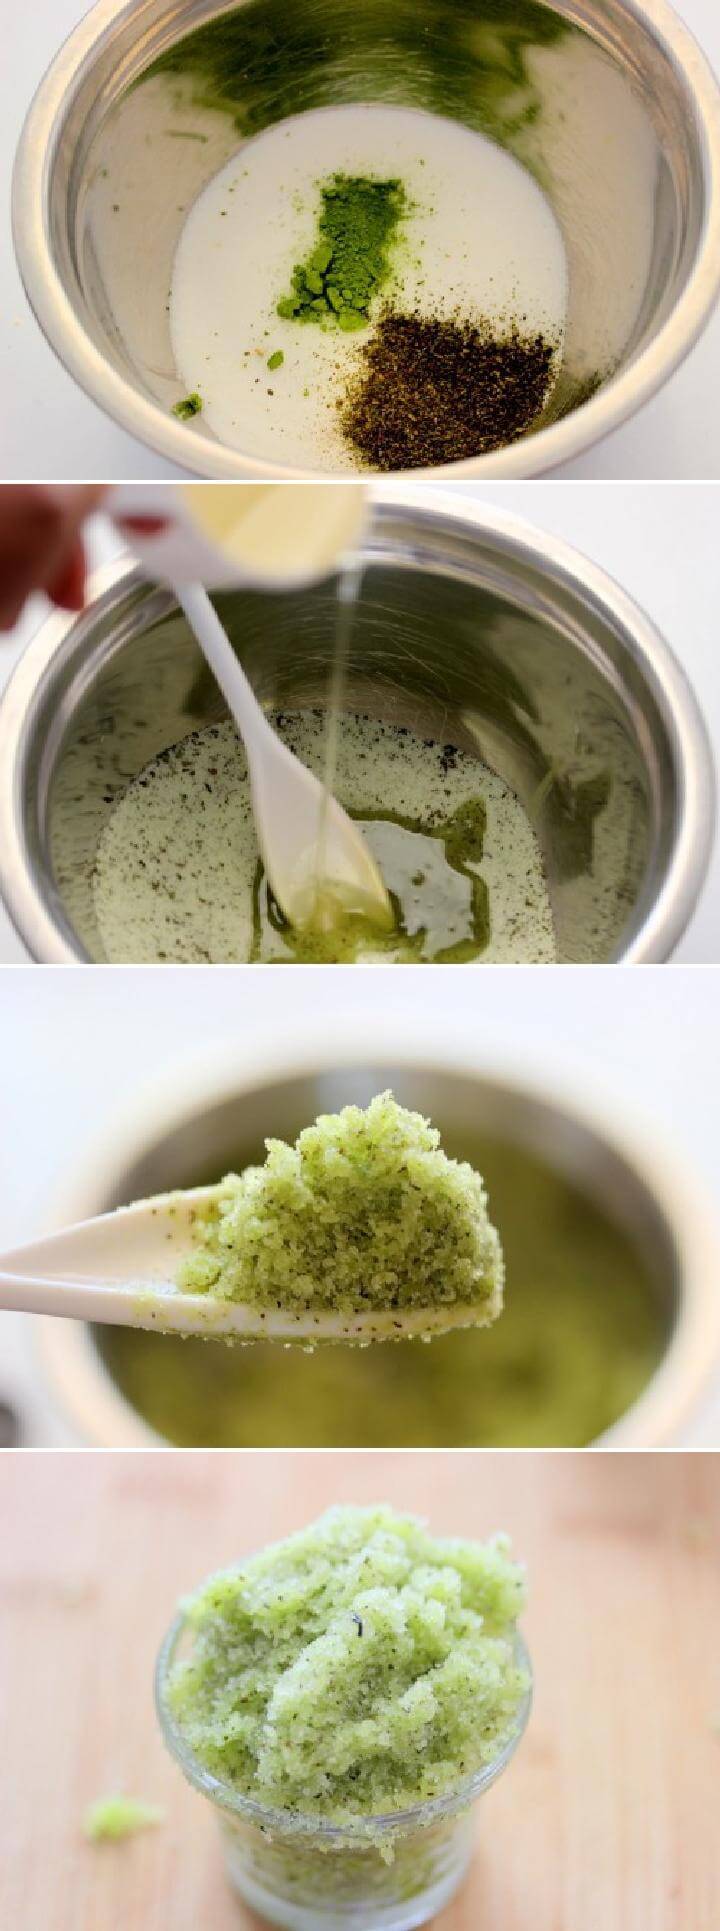 DIY Green Tea Sugar Scrub Tutorial